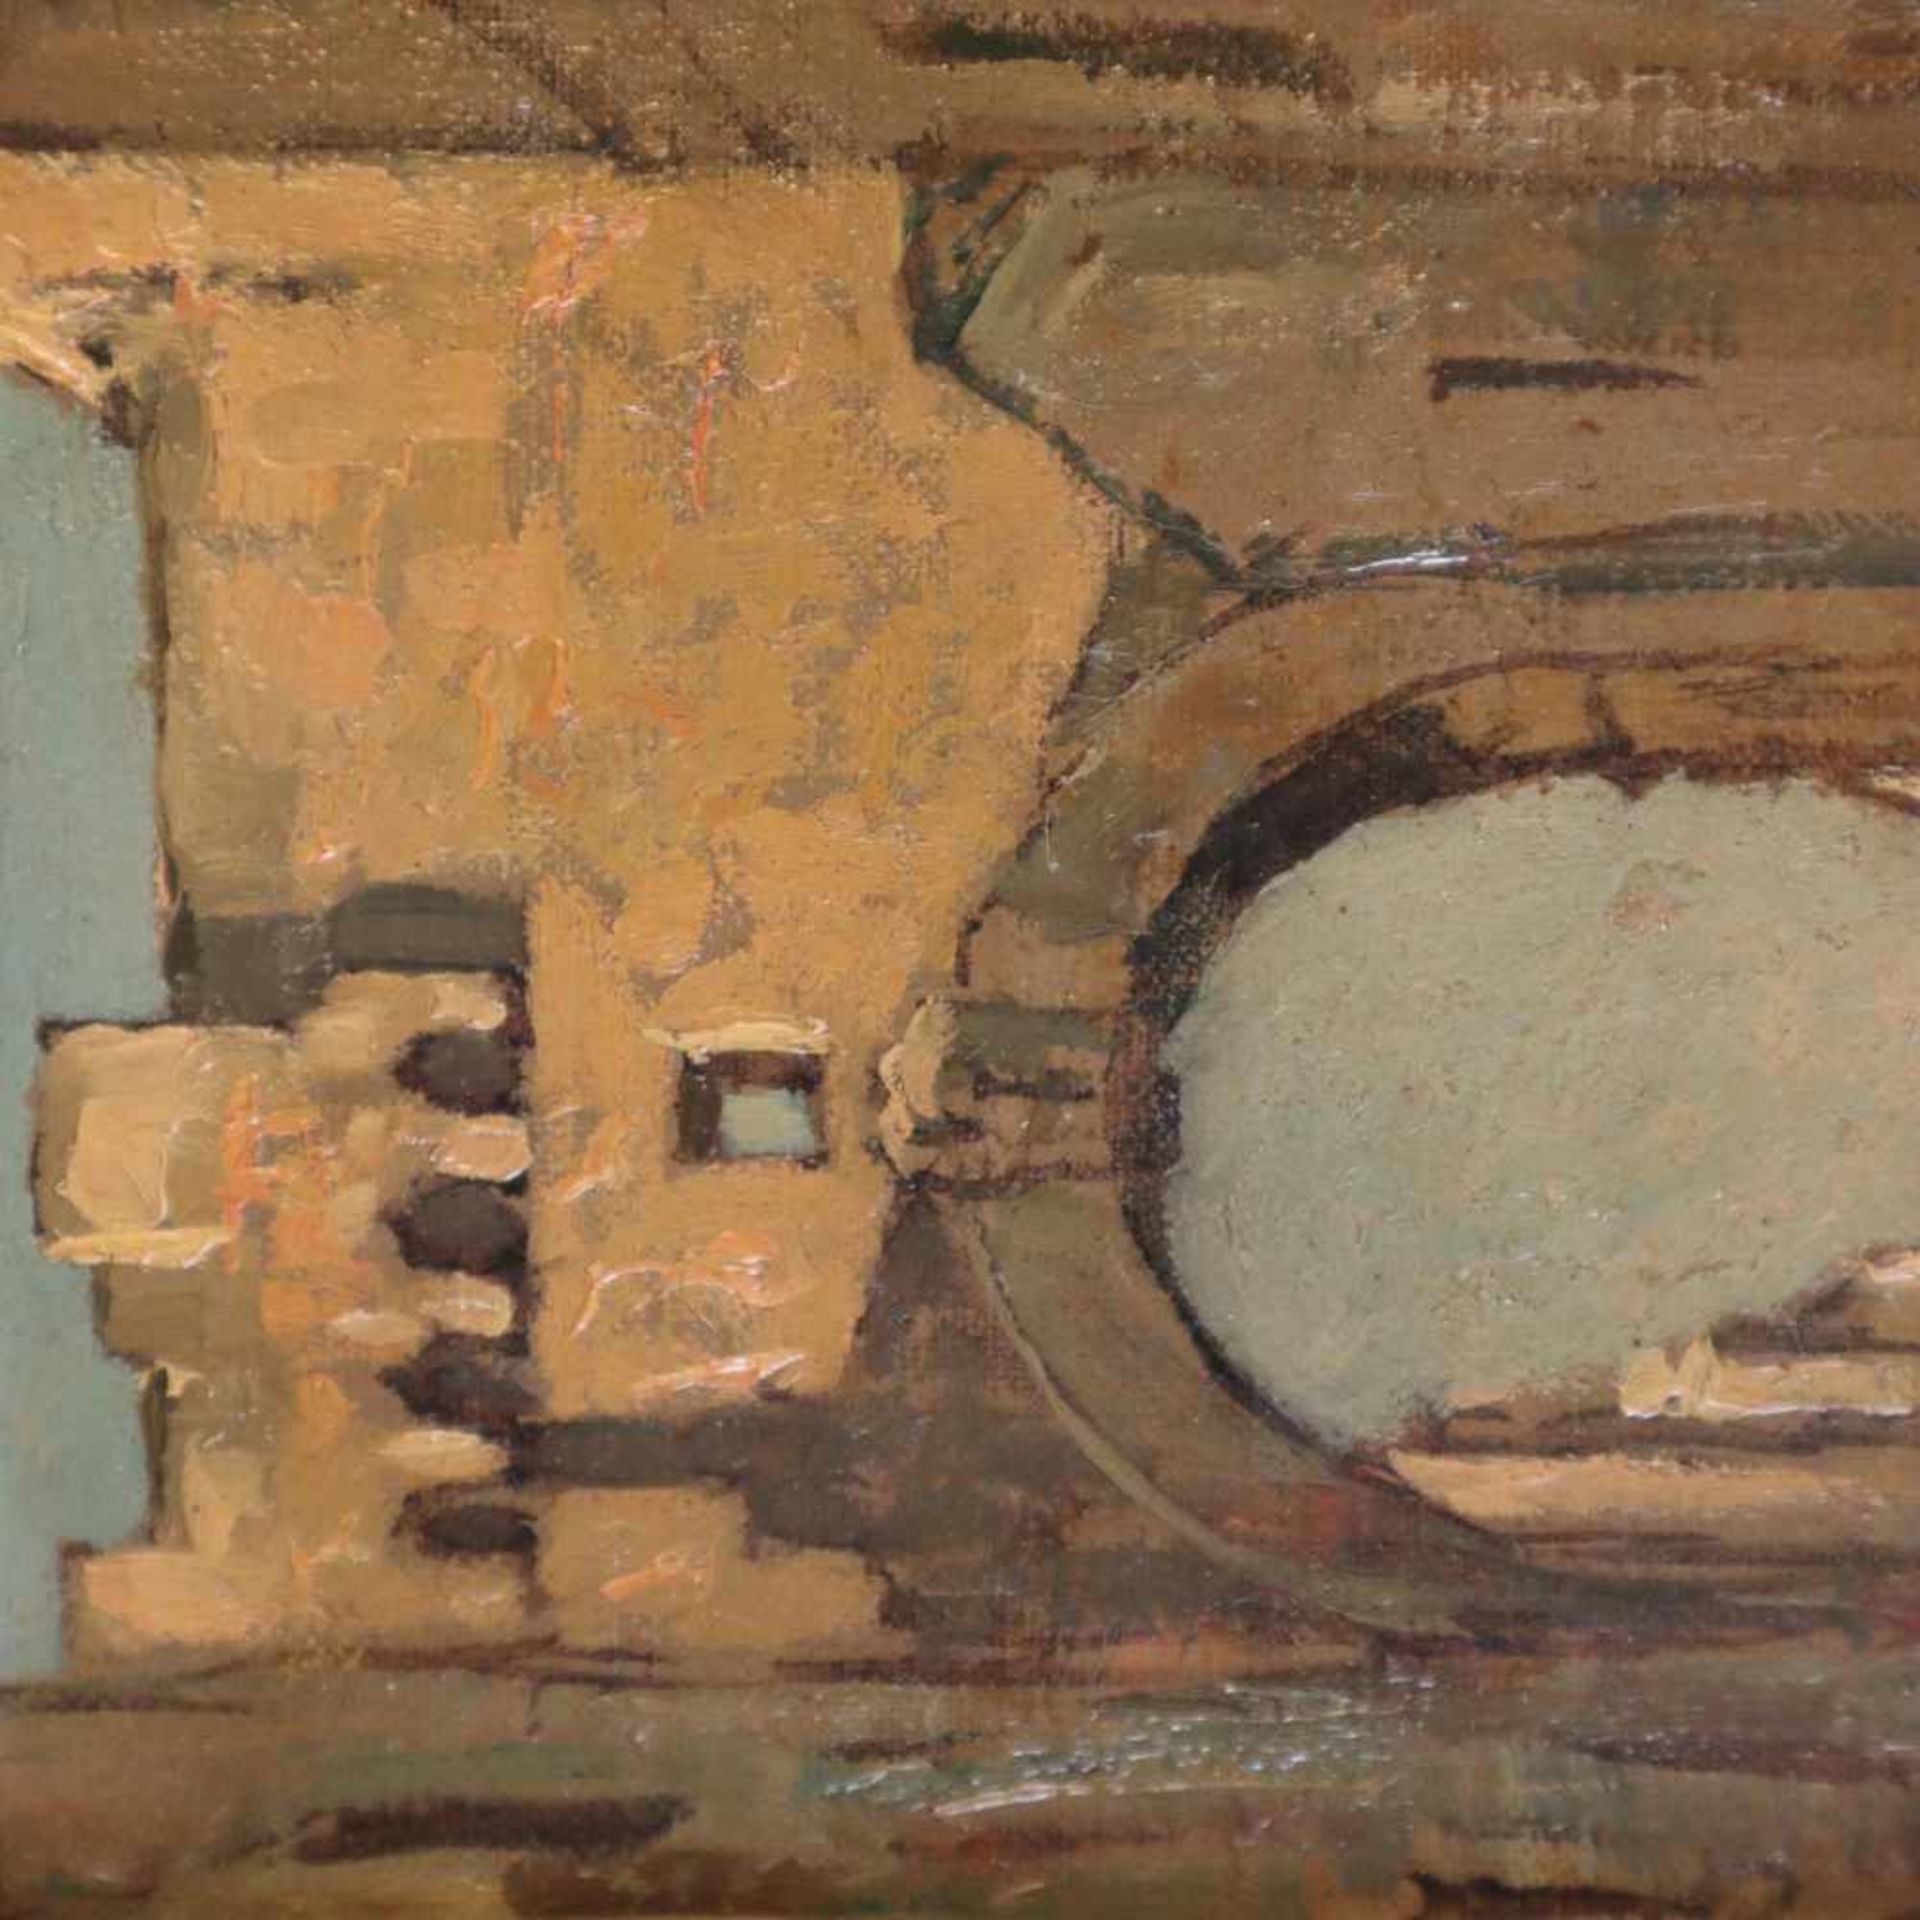 Lomi, Giovanni (1889 Livorno - 1969, italienischer Landschafts- und Architekturmaler) - "Vecchia - Bild 3 aus 6